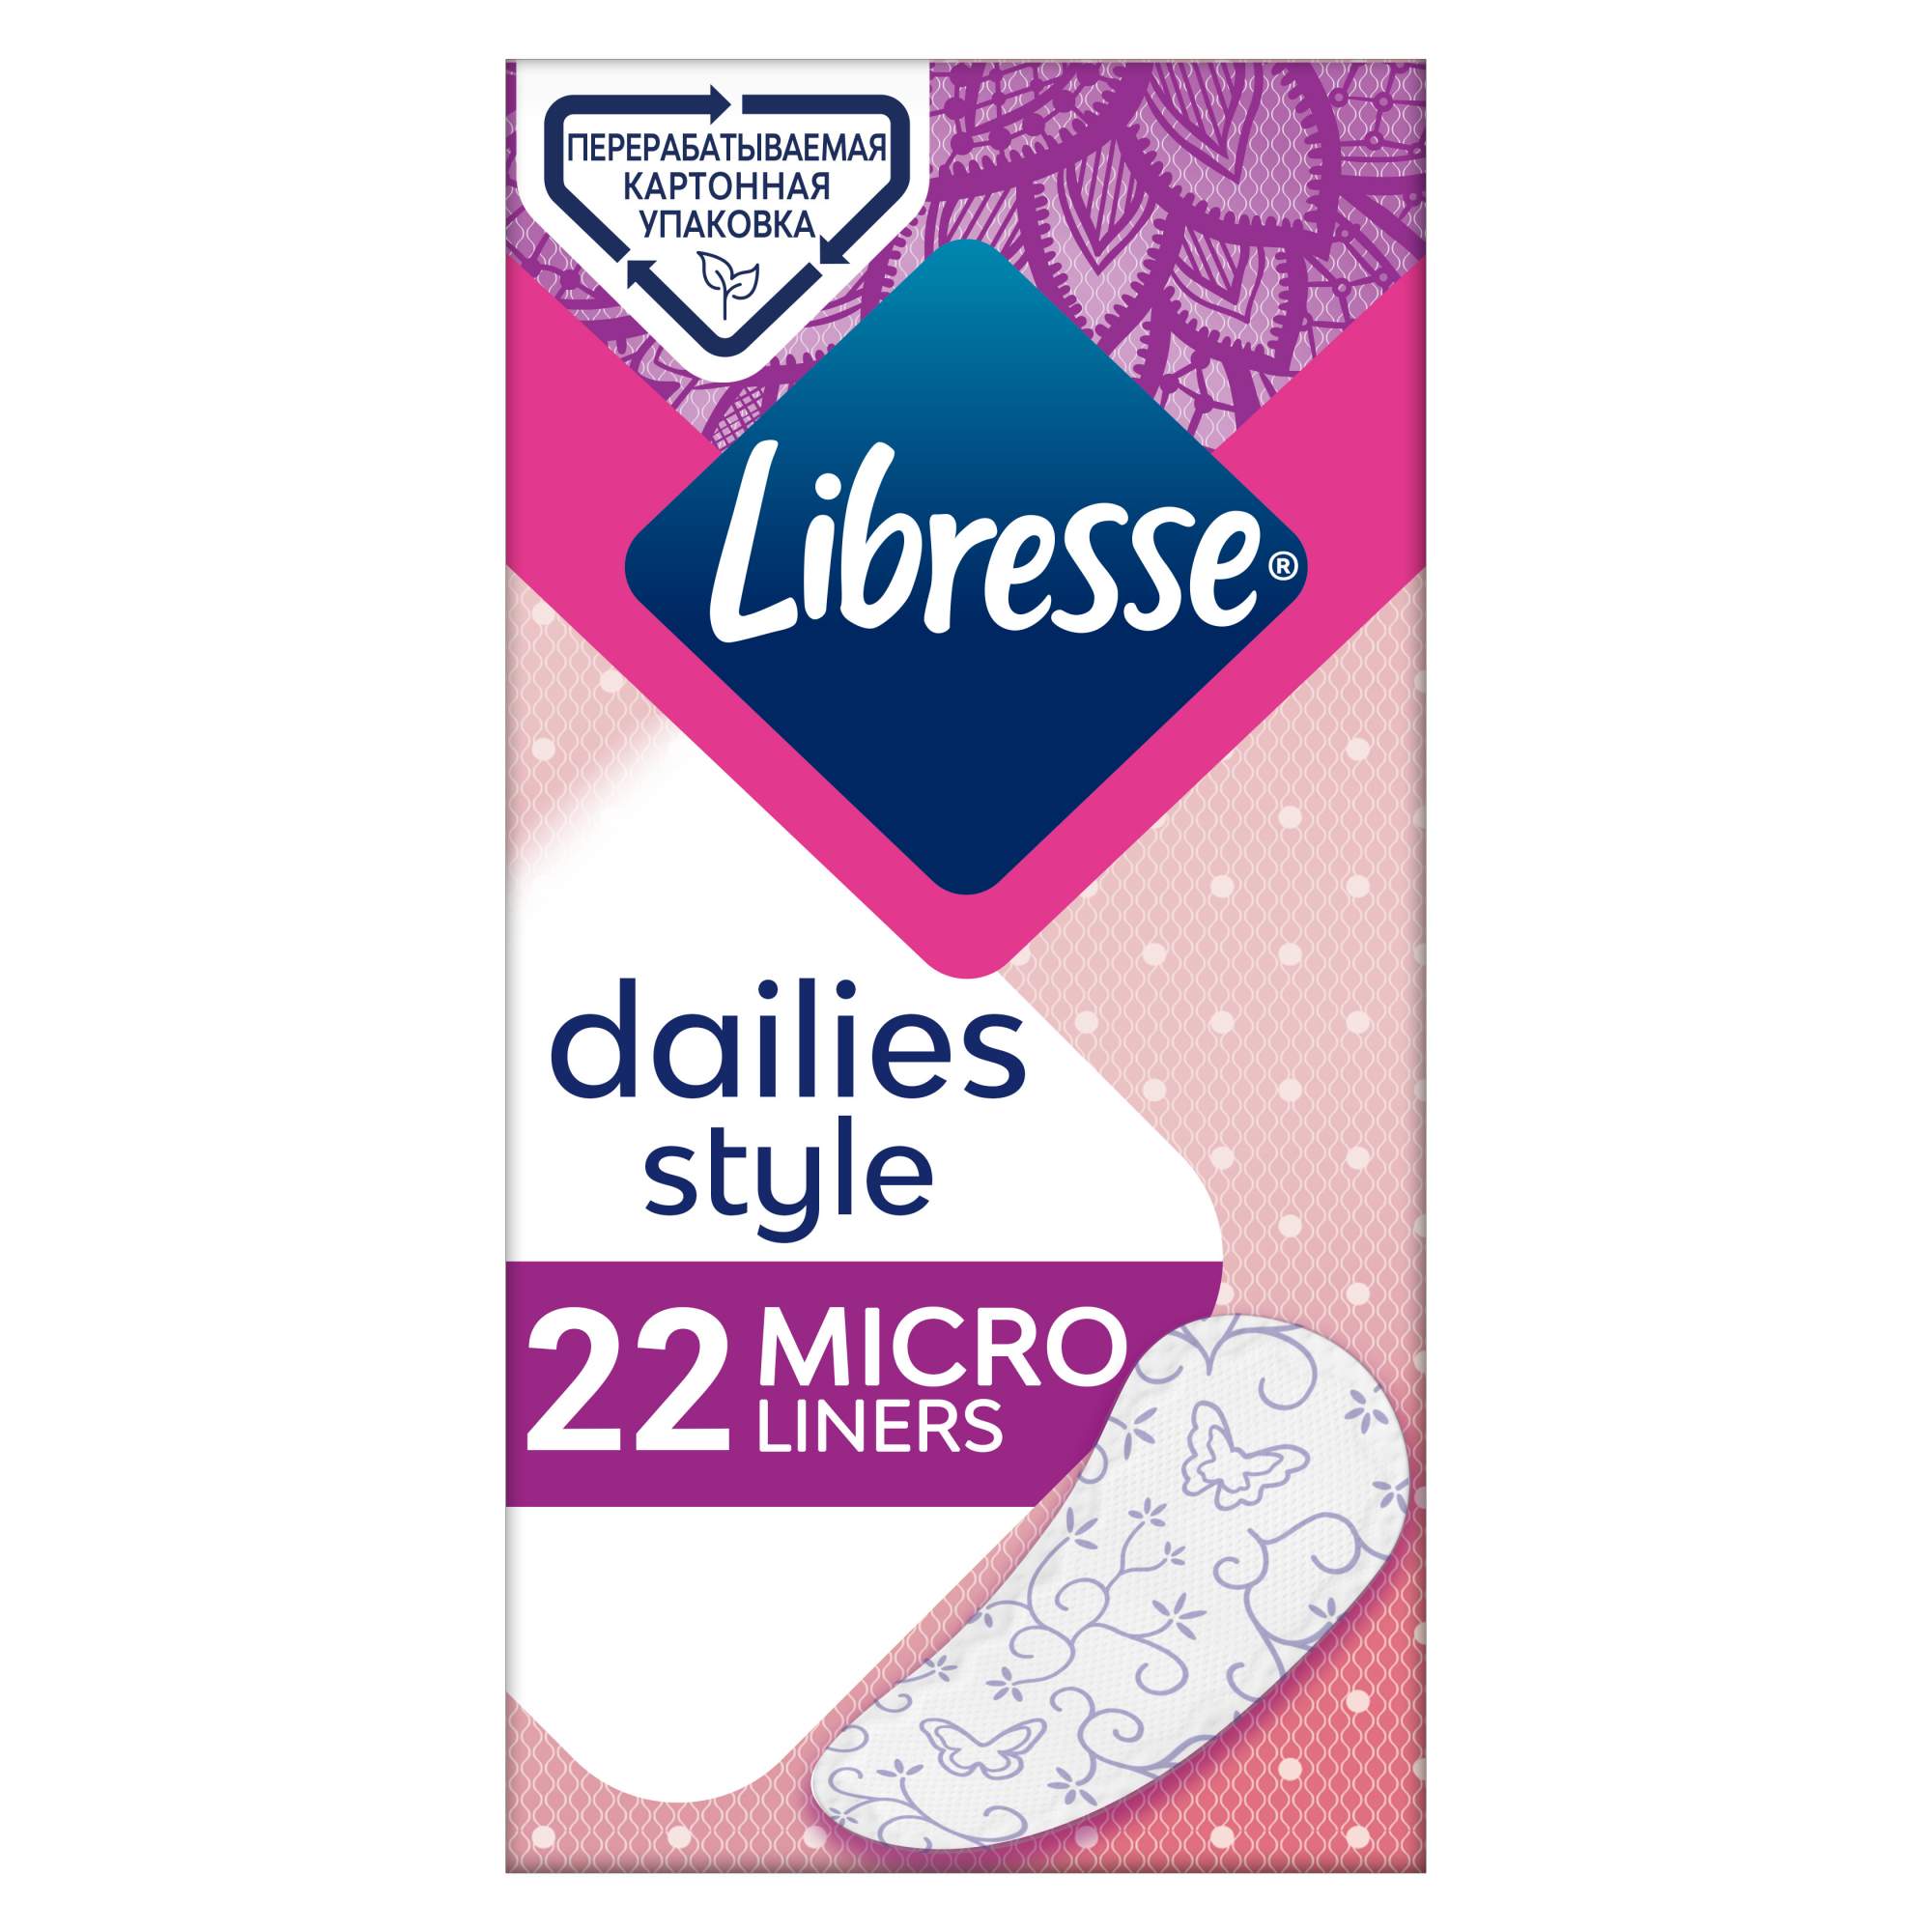 Ежедневные Прокладки Libresse Dailies Style Micro 22 шт.